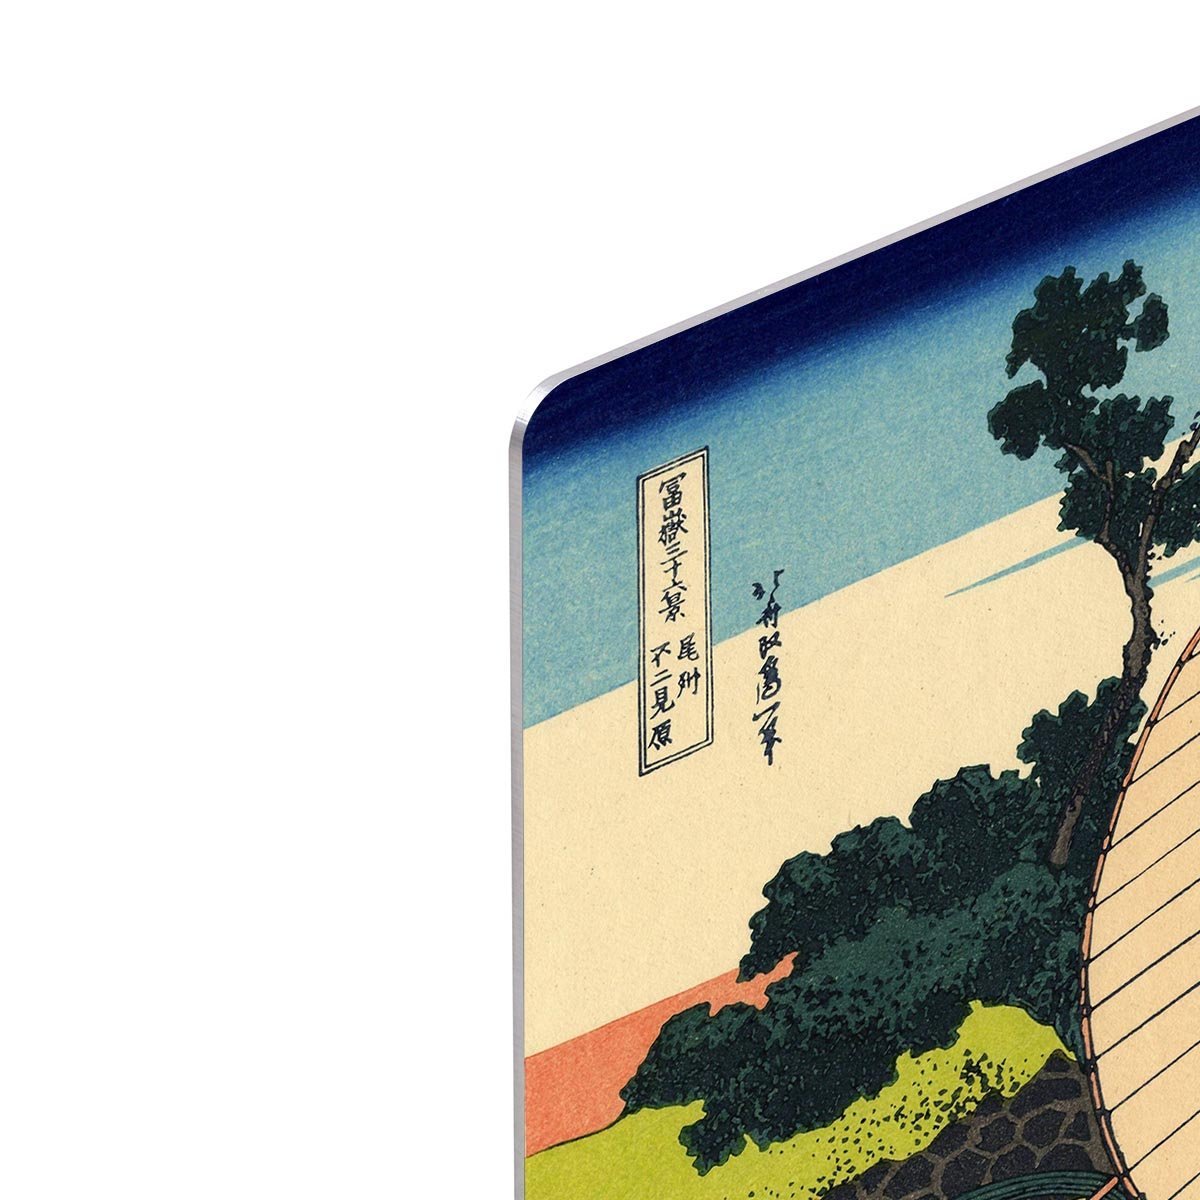 Owari province by Hokusai HD Metal Print